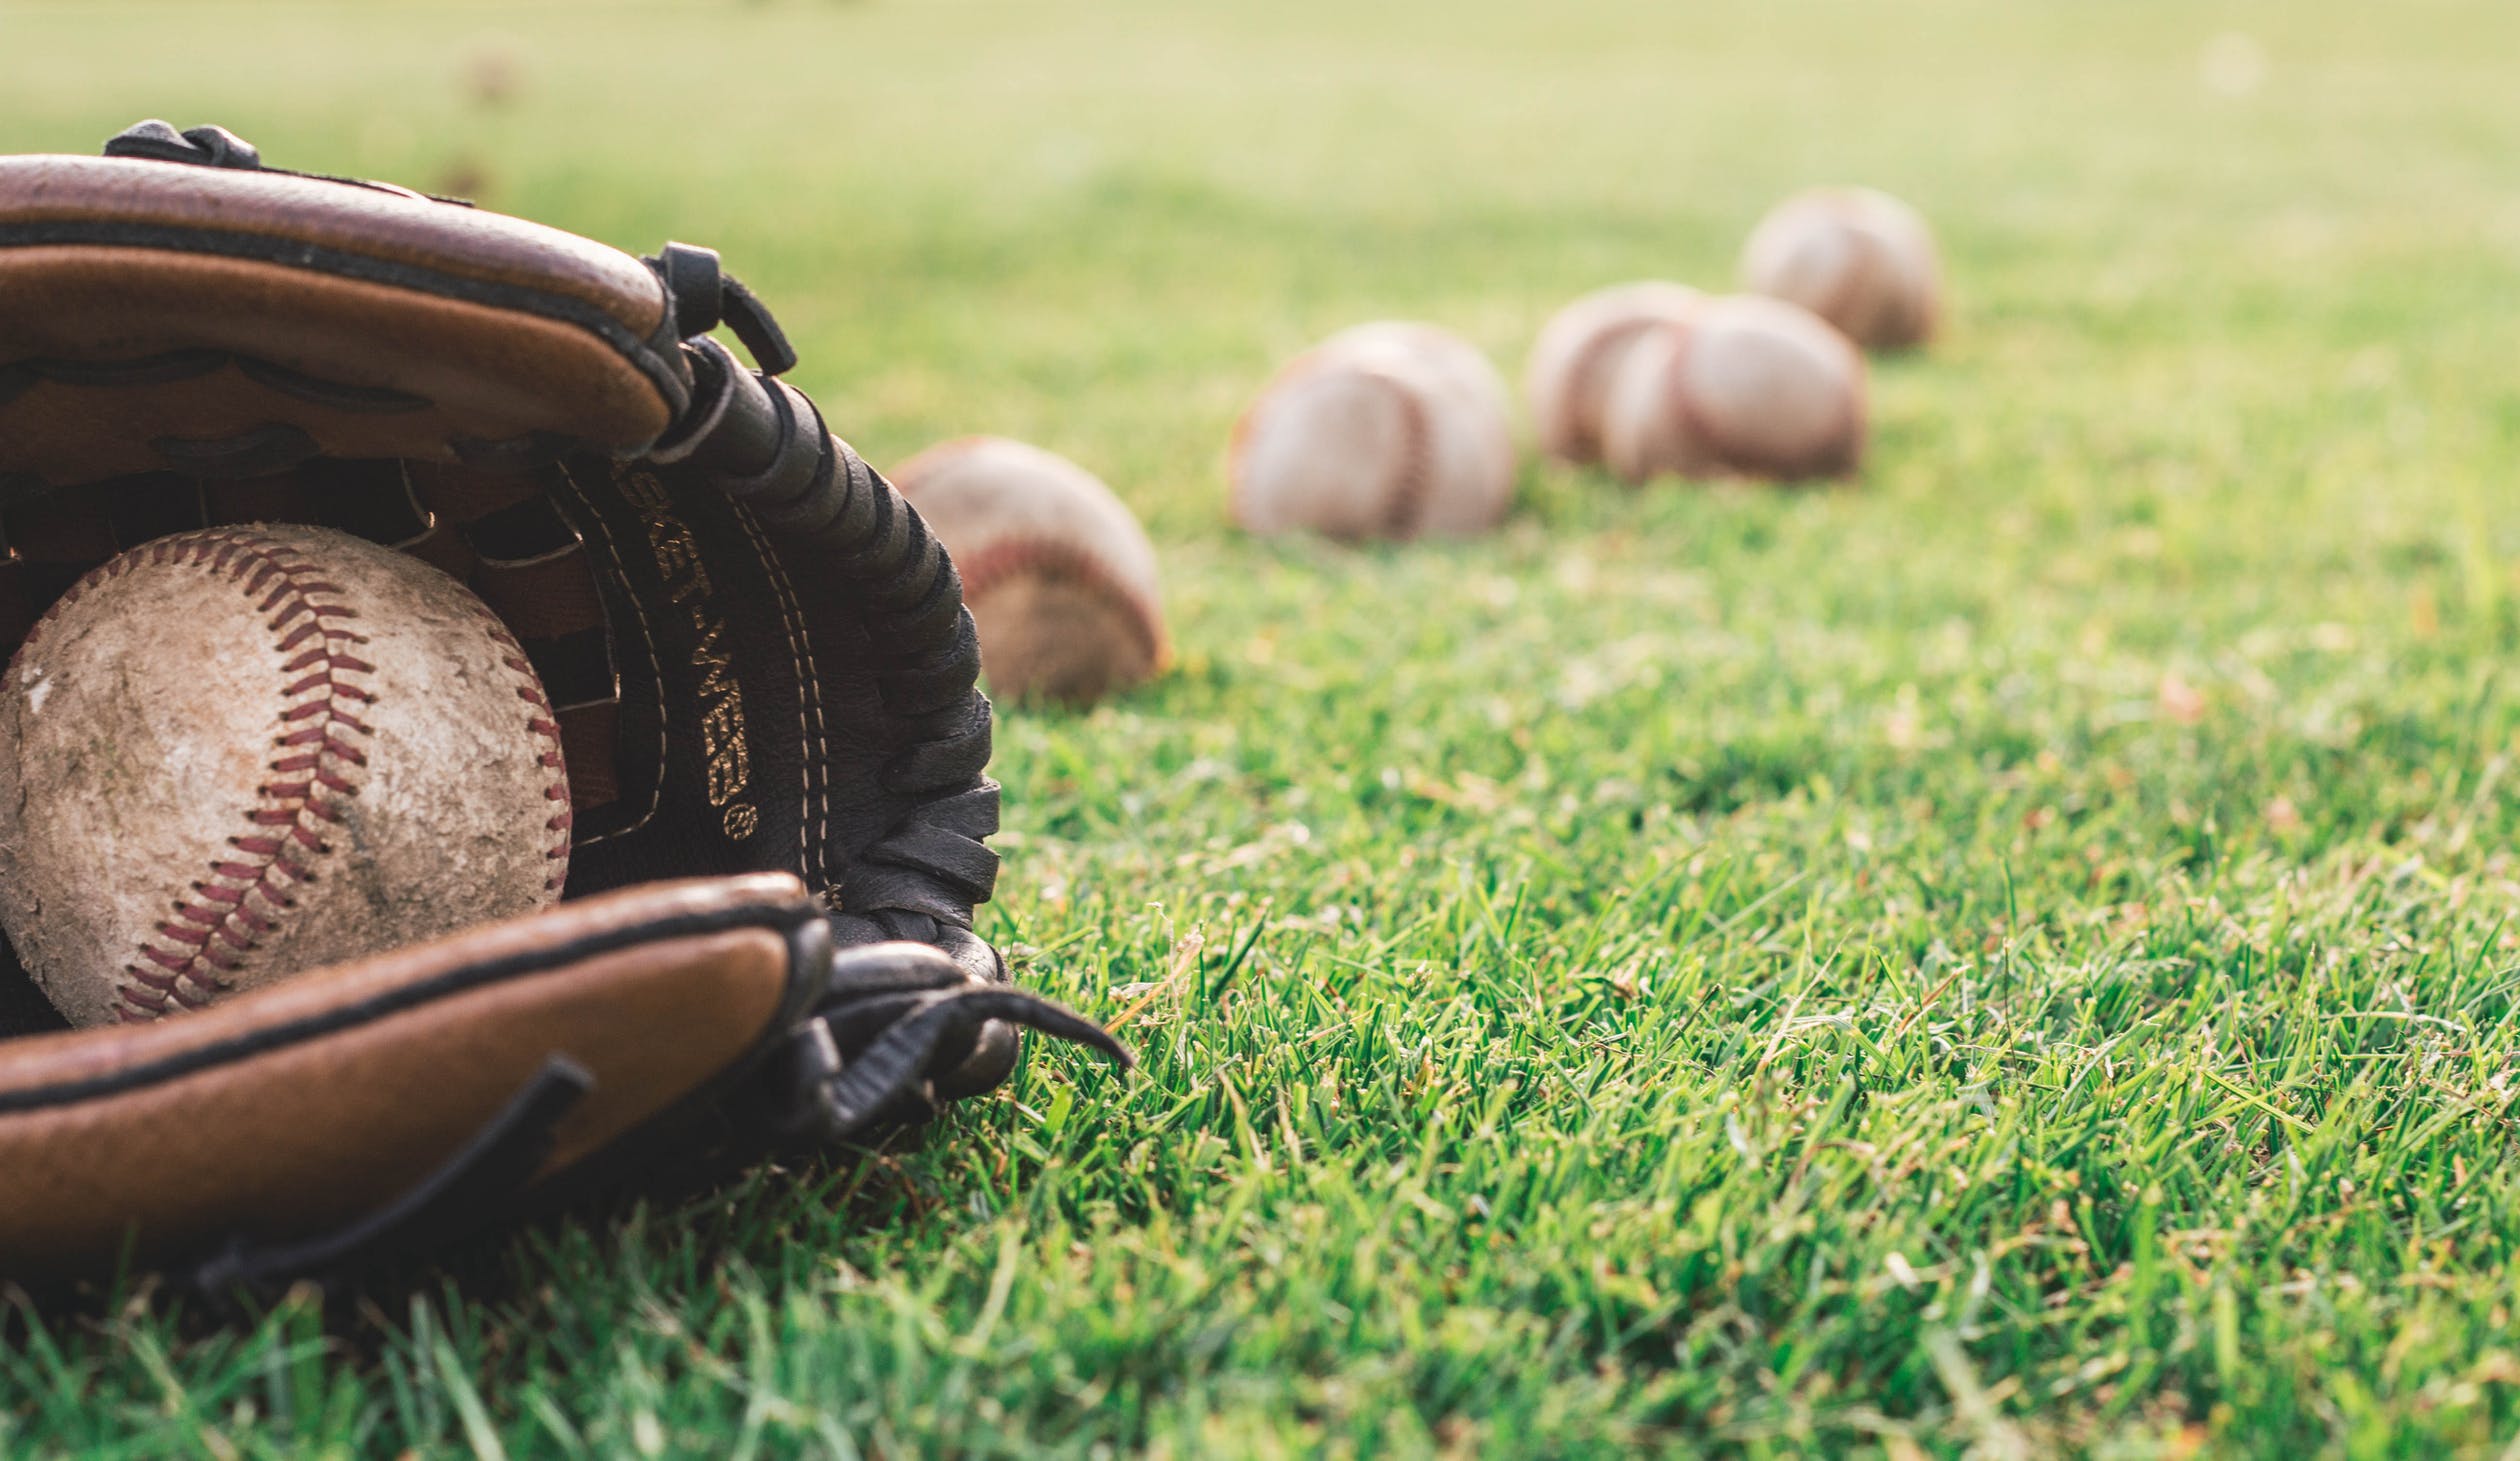 Baseball glove and baseball in field